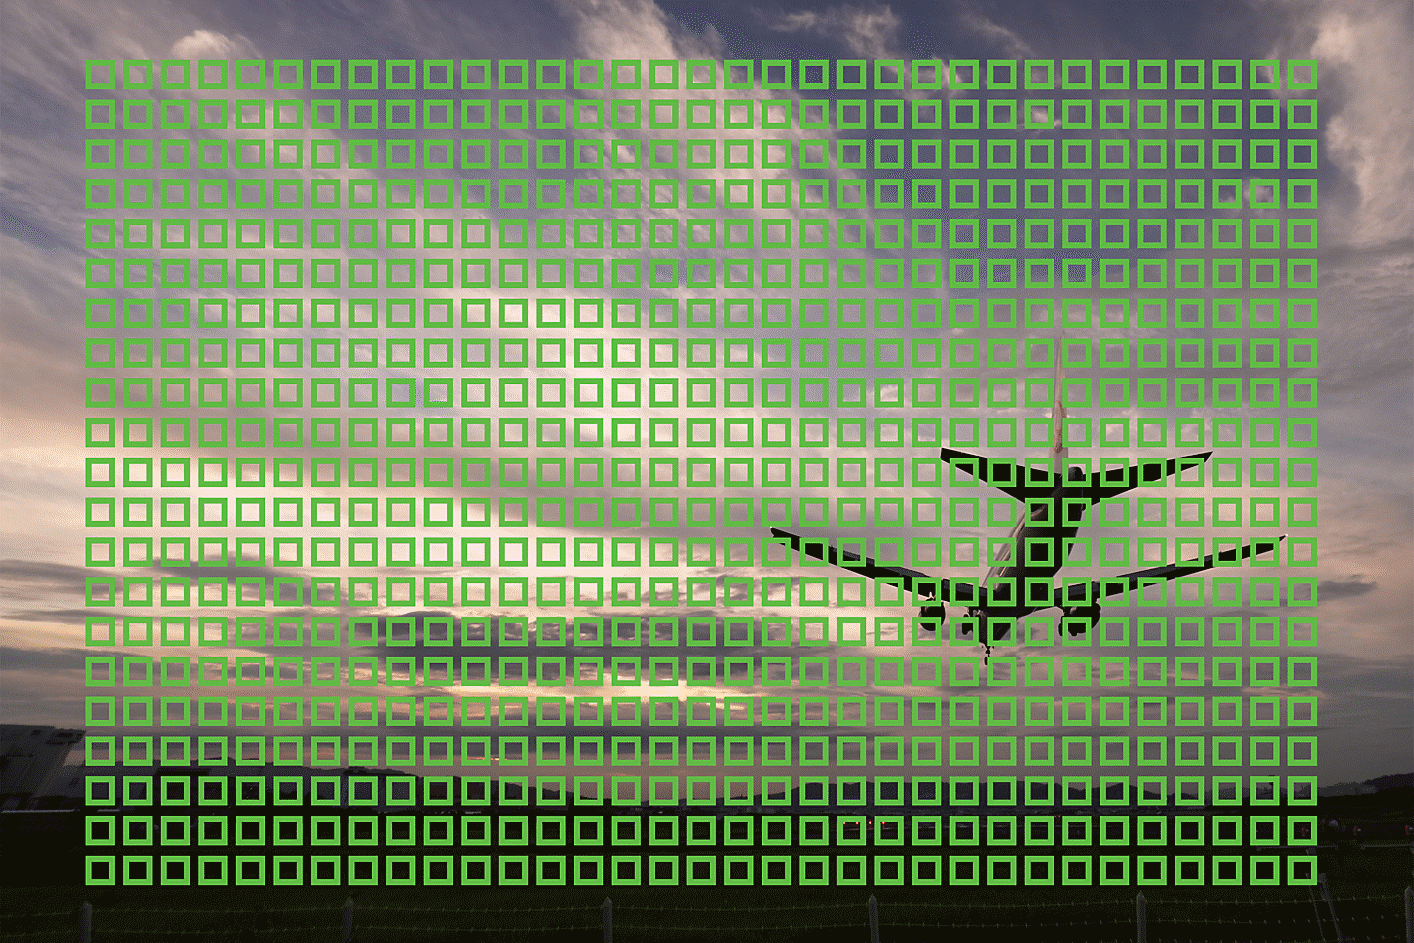 Beispielabbildung eines fliegenden Flugzeugs mit kleinen Quadraten, die die im Bild verteilten 693 AF-Punkte illustrieren